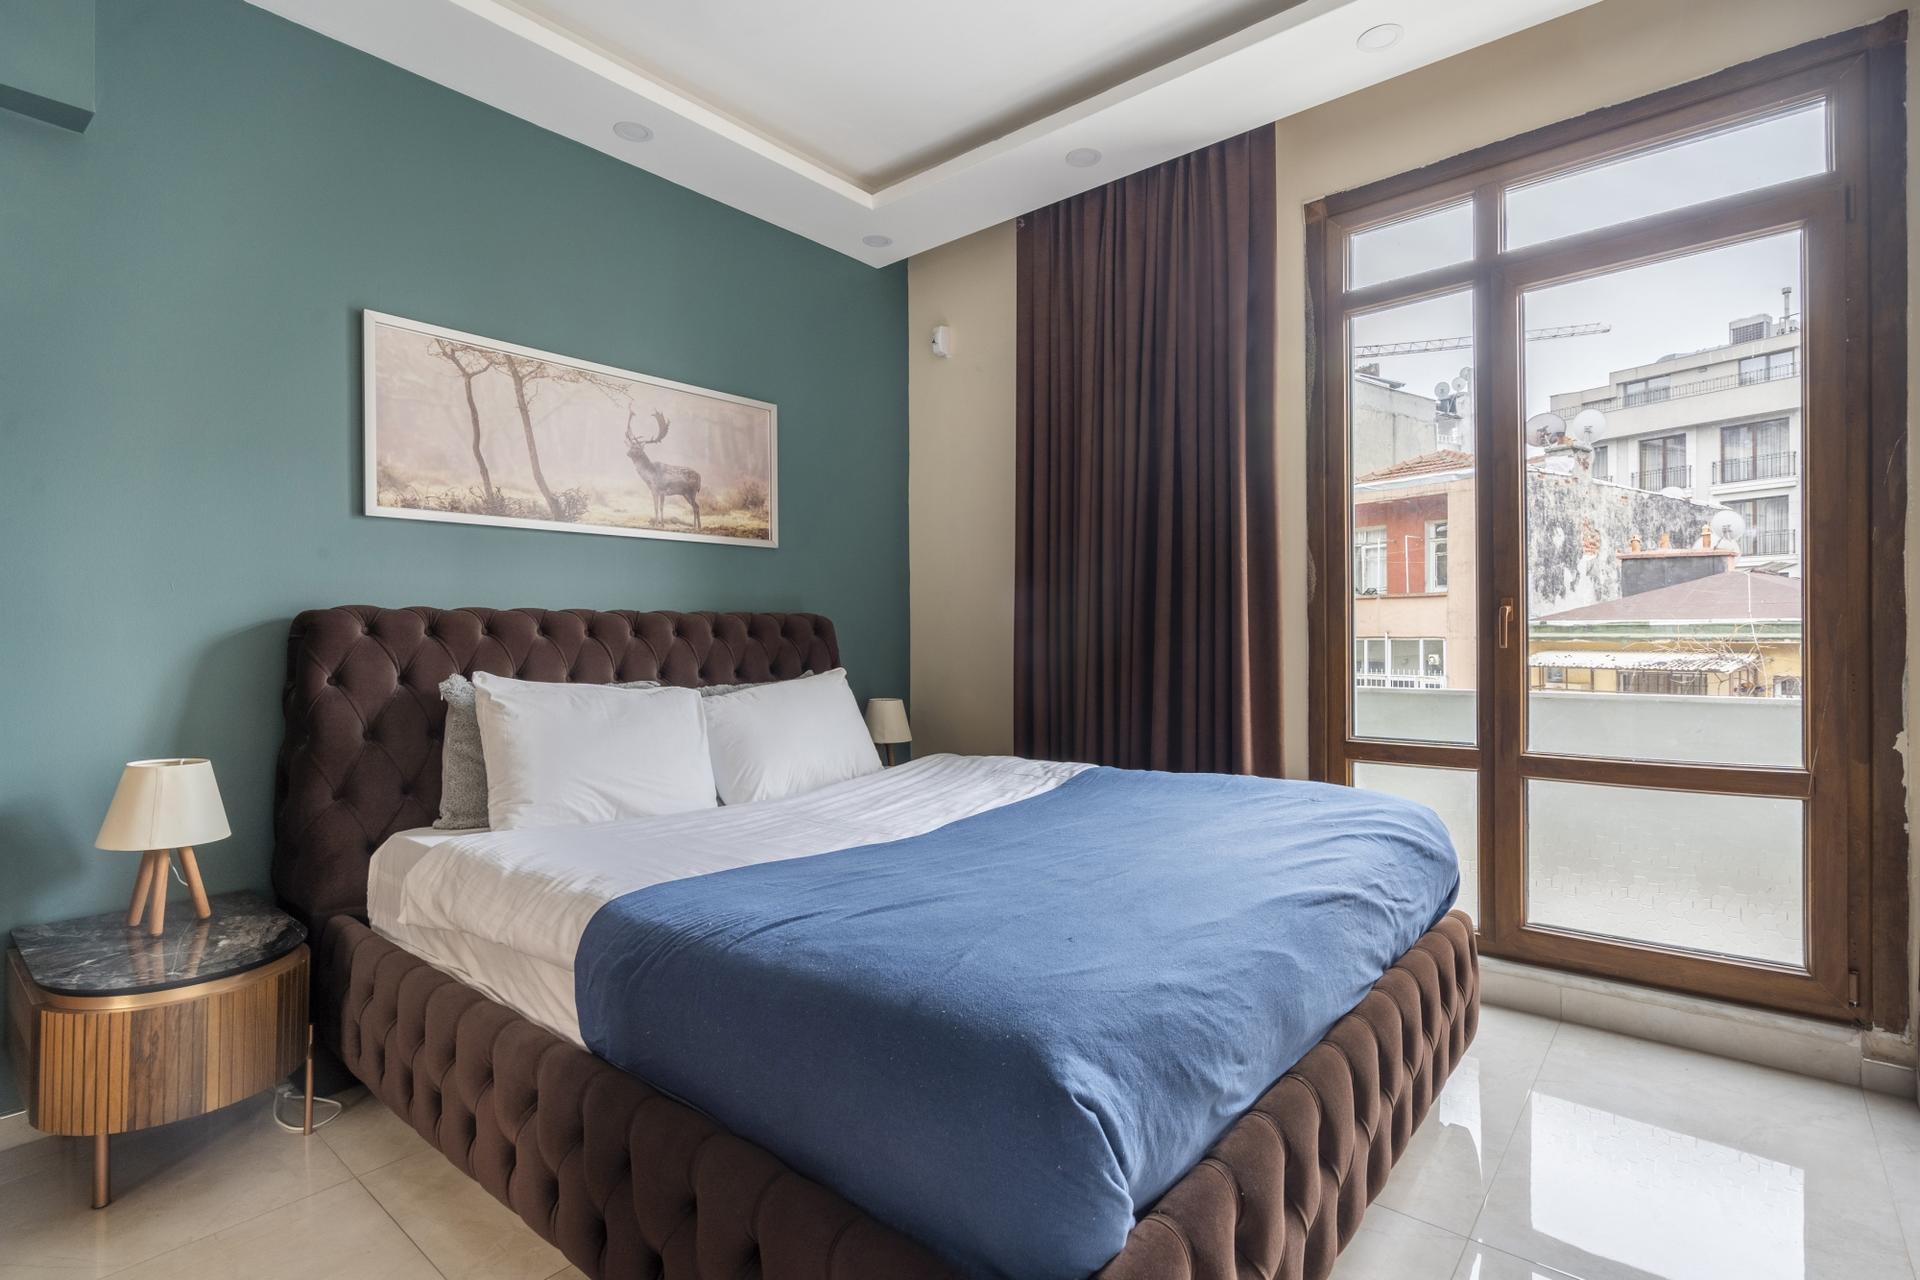 A big comfy bedroom awaits you…